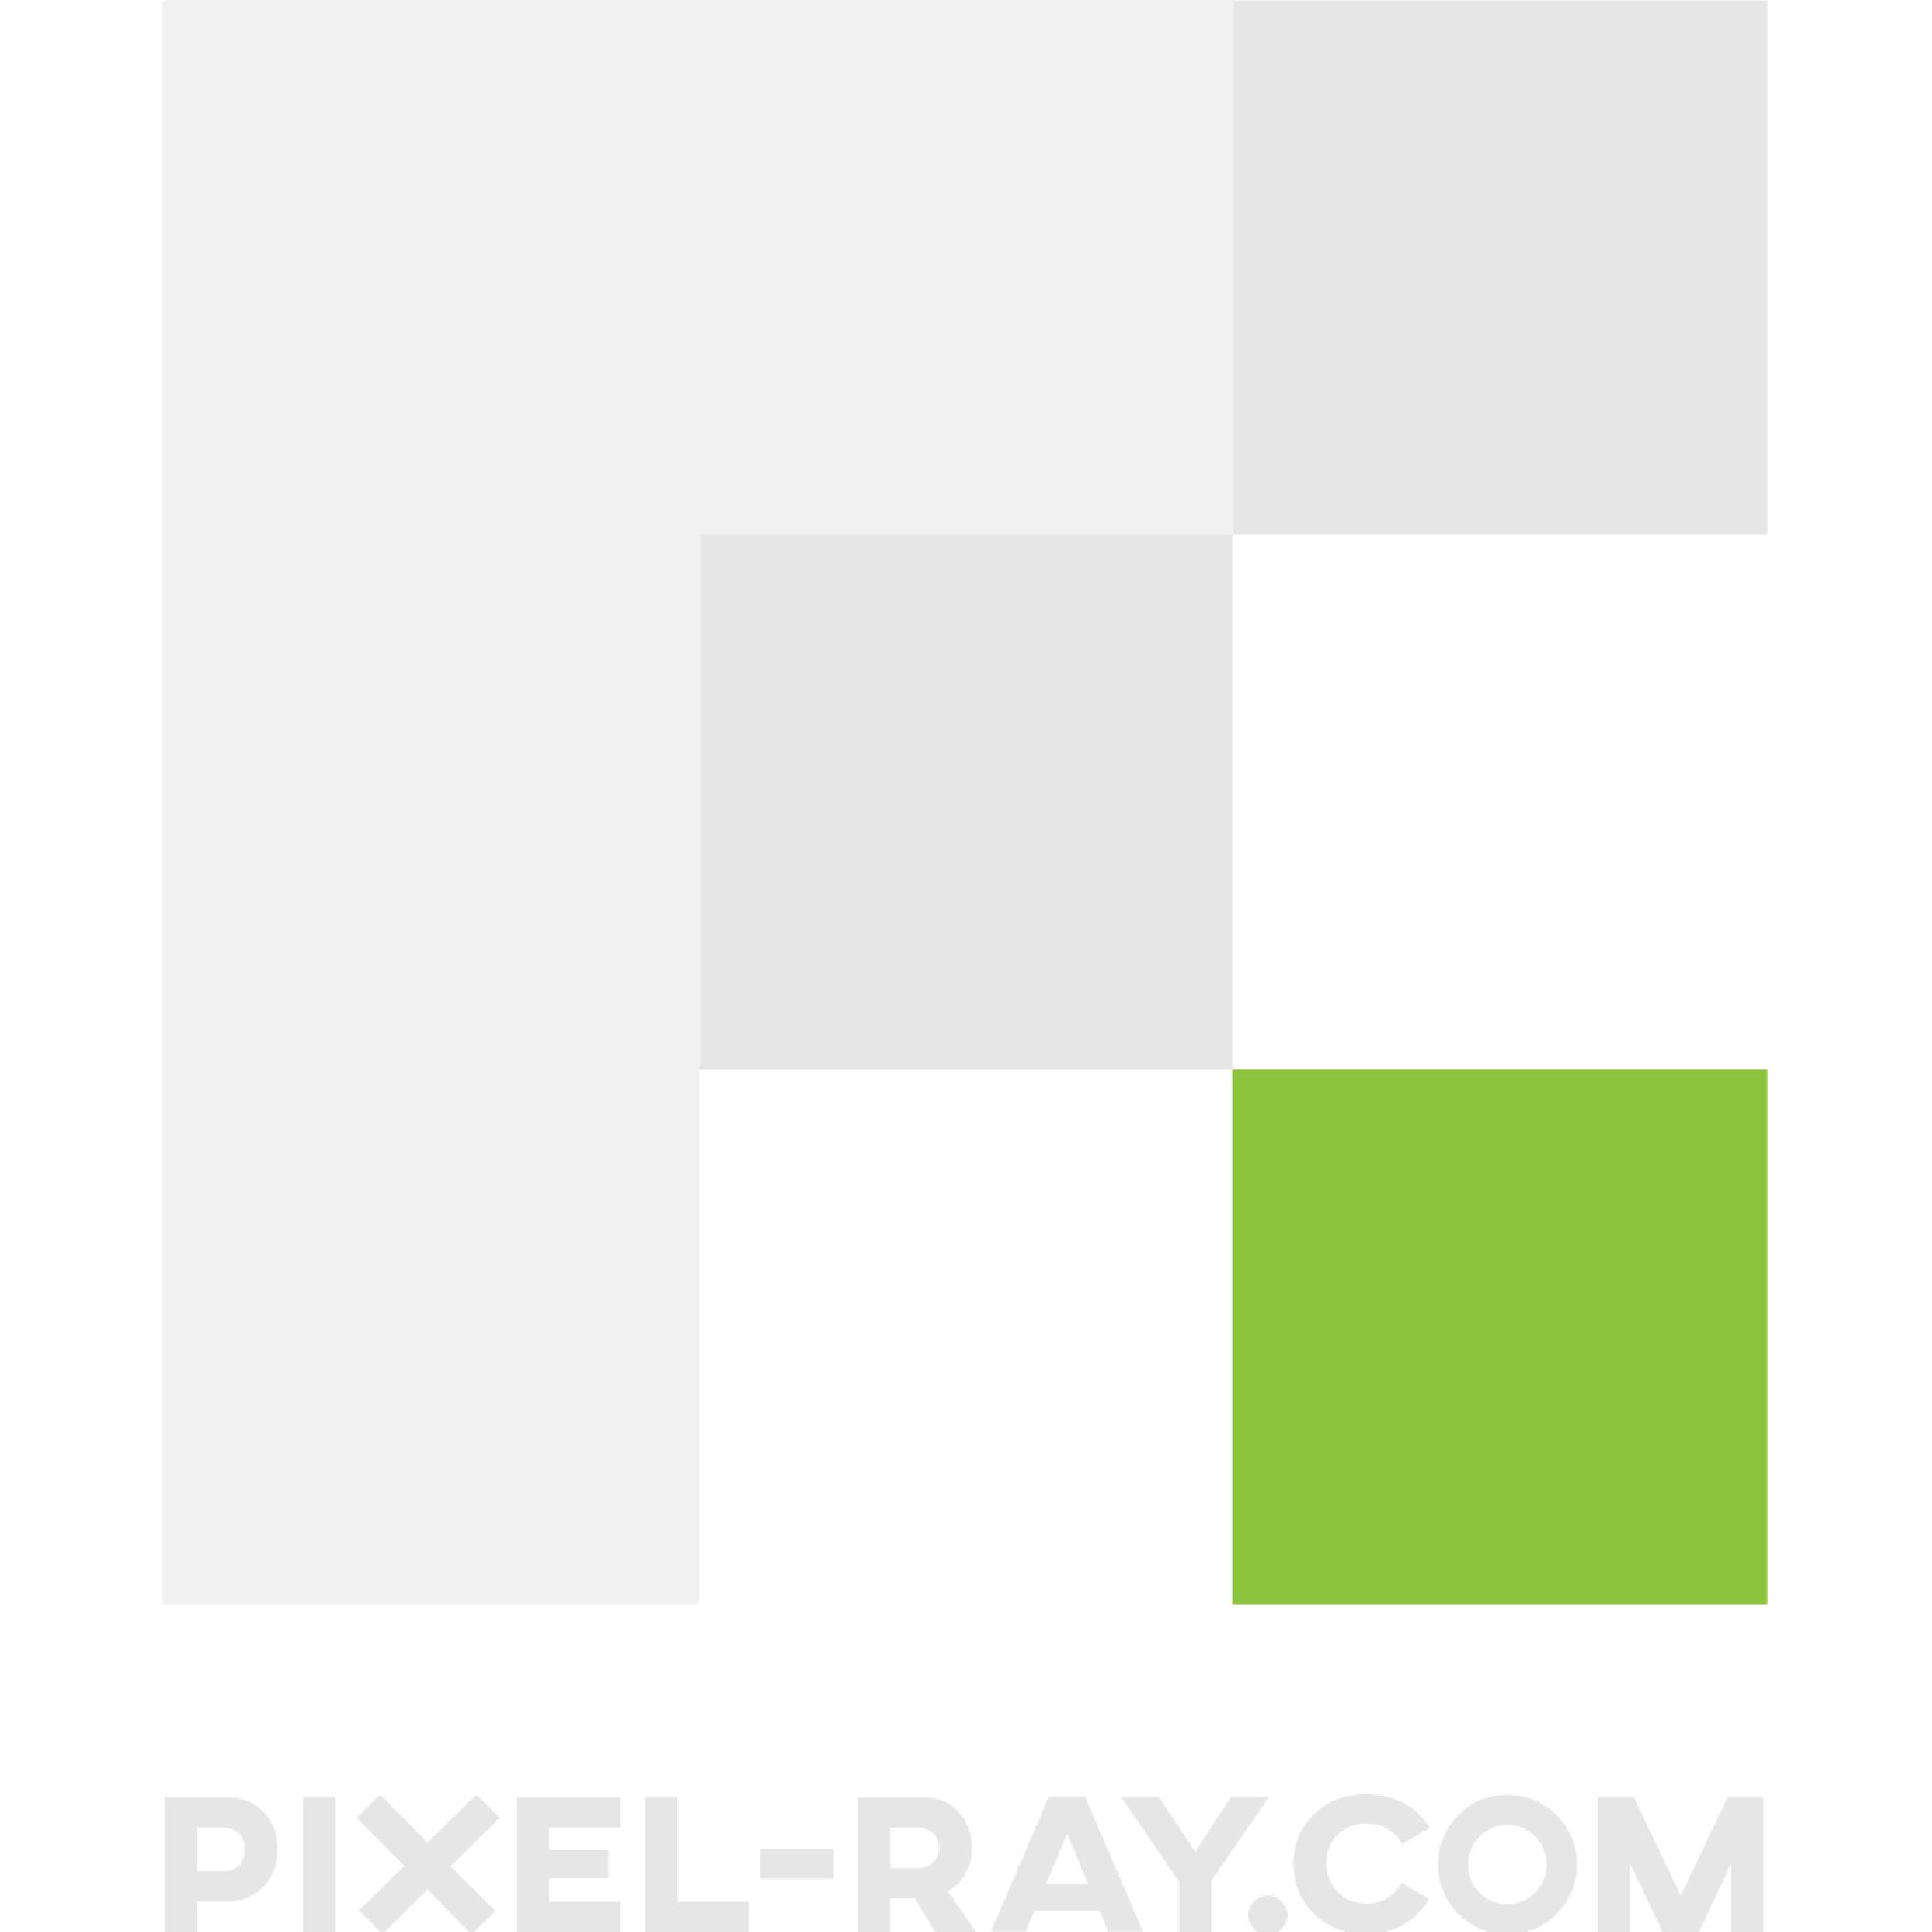 Pixel-Ray